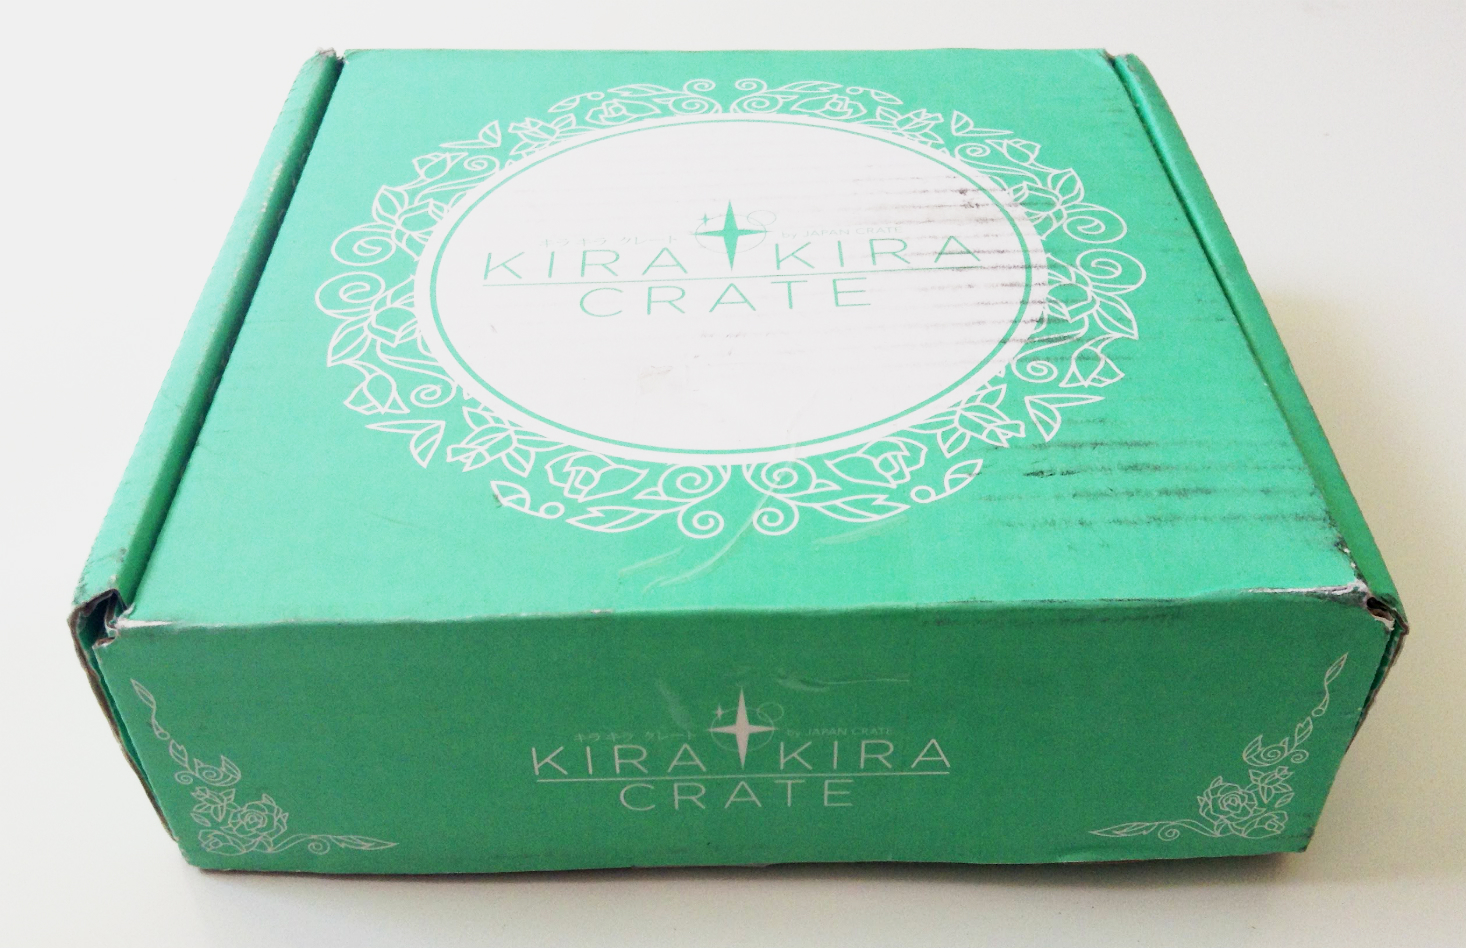 Kira Kira Crate by Japan Crate Review + Coupon – April 2018